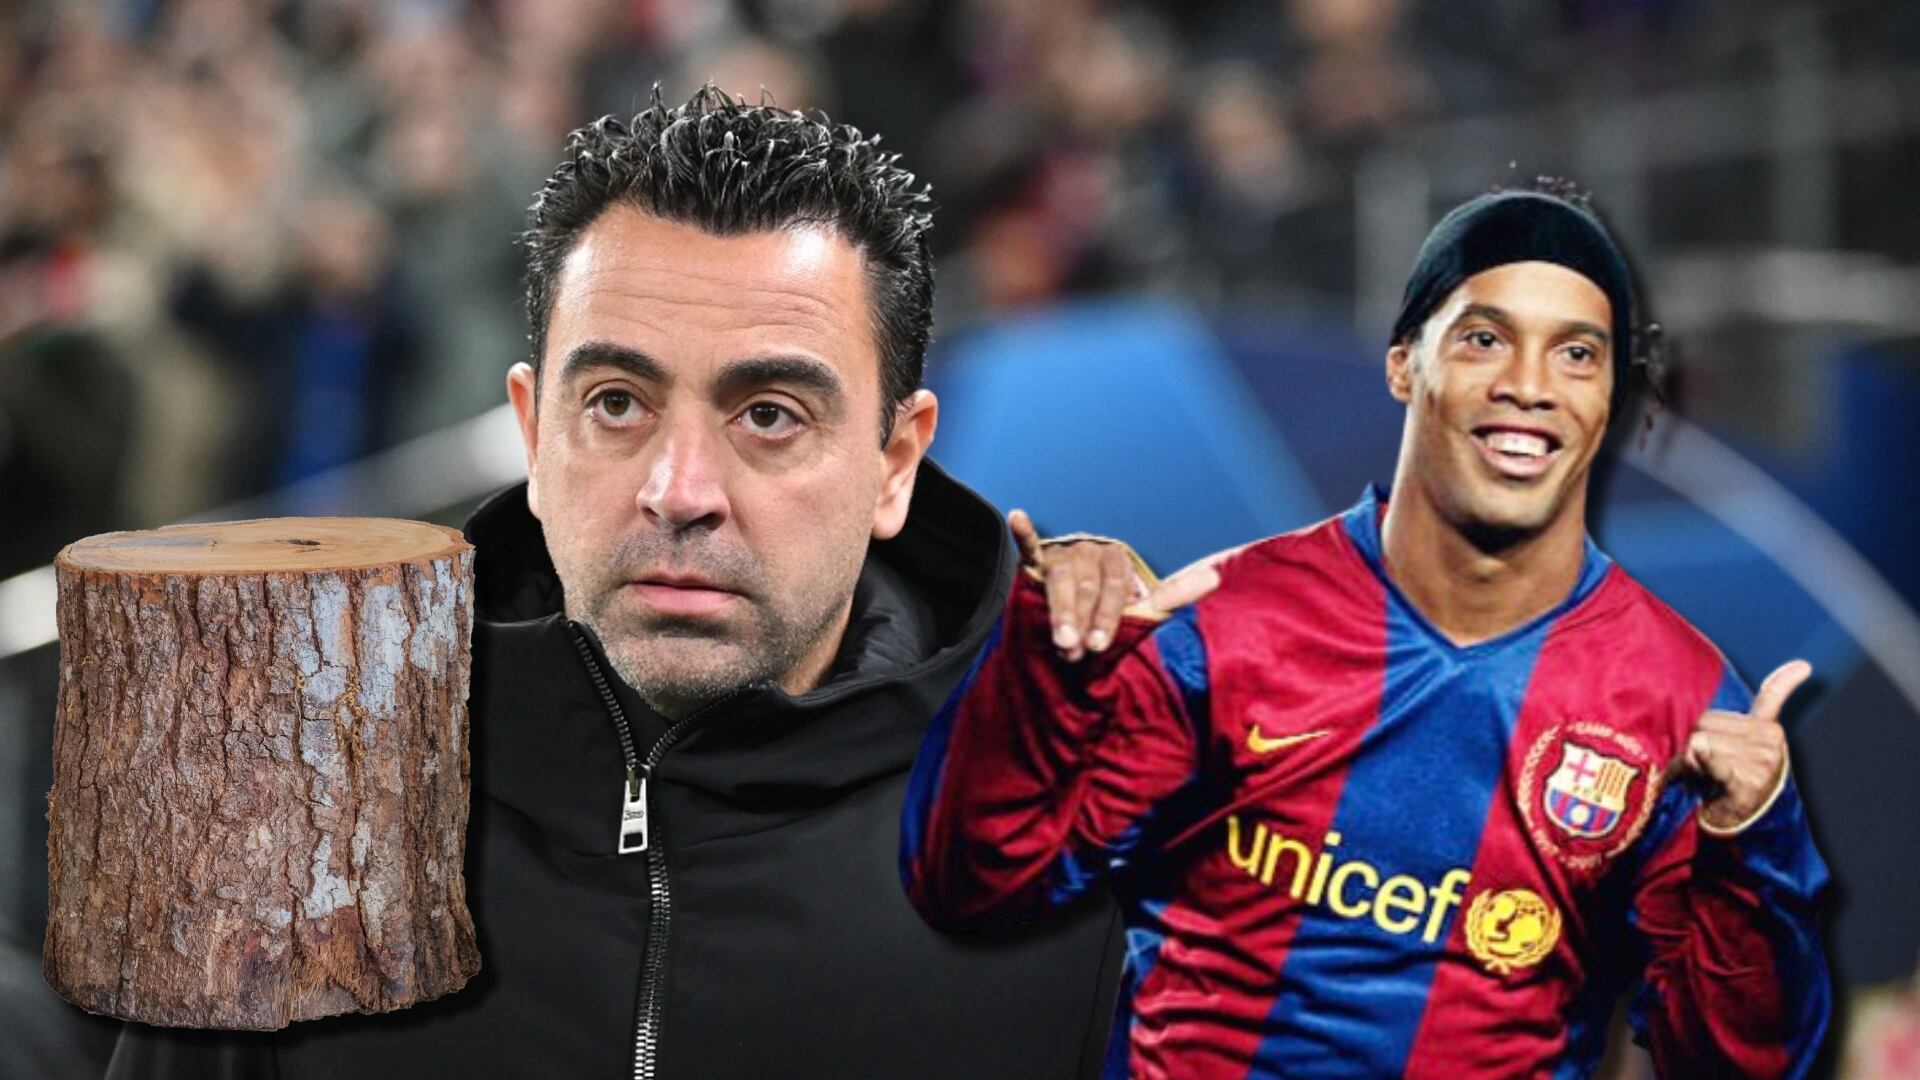 Era un tronco en Barça y habló mal de Xavi, salió y hoy hace jugadas como Dinho